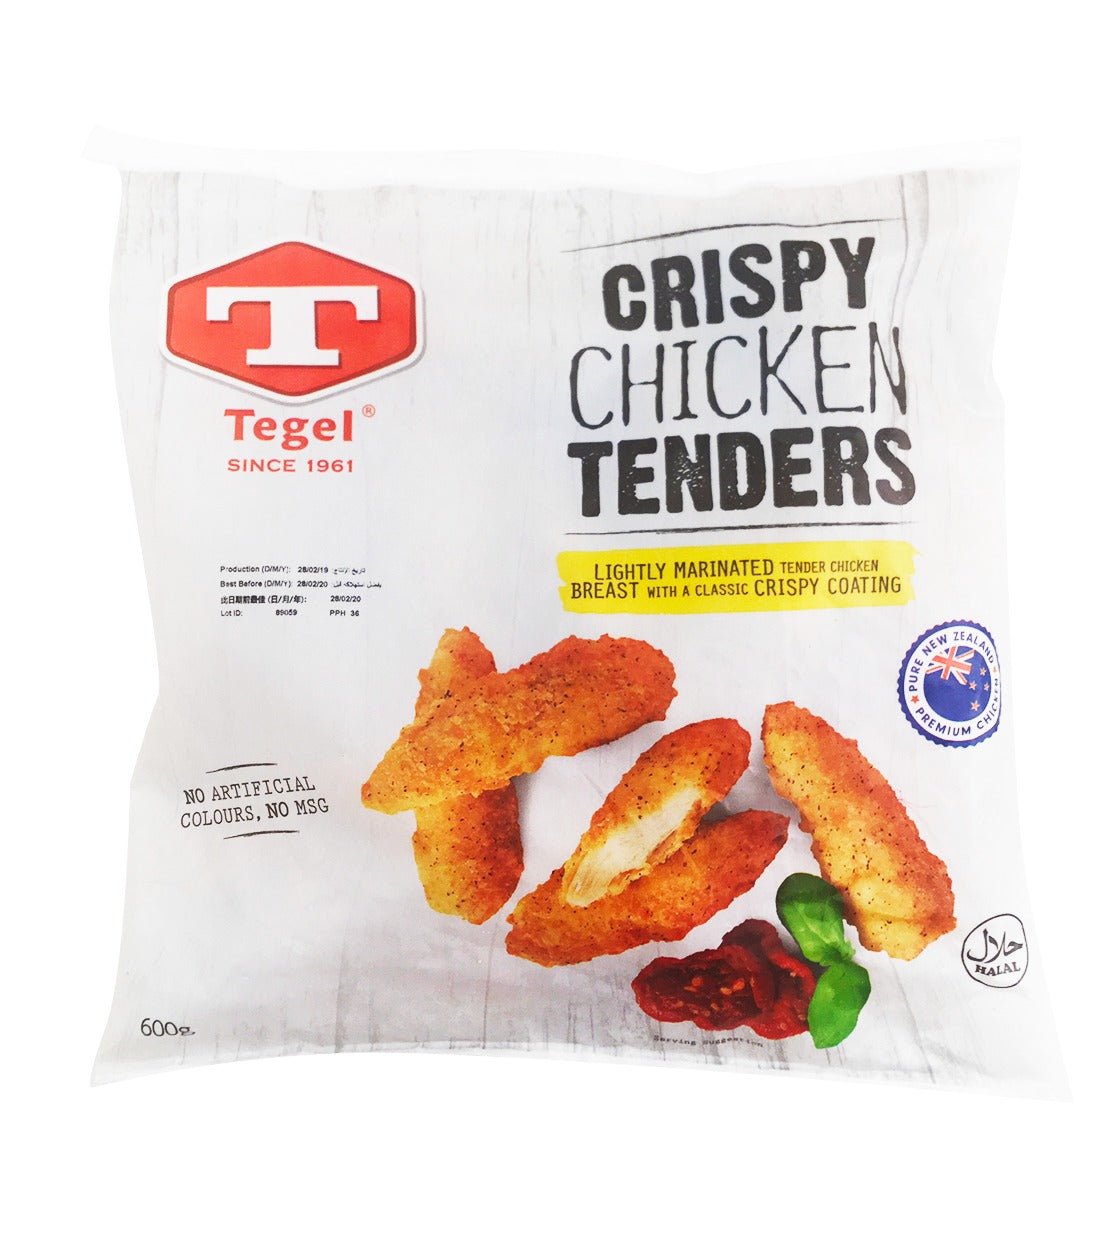 Tegel Frozen Crispy Chicken Tenders 600g - Prime Gourmet Online